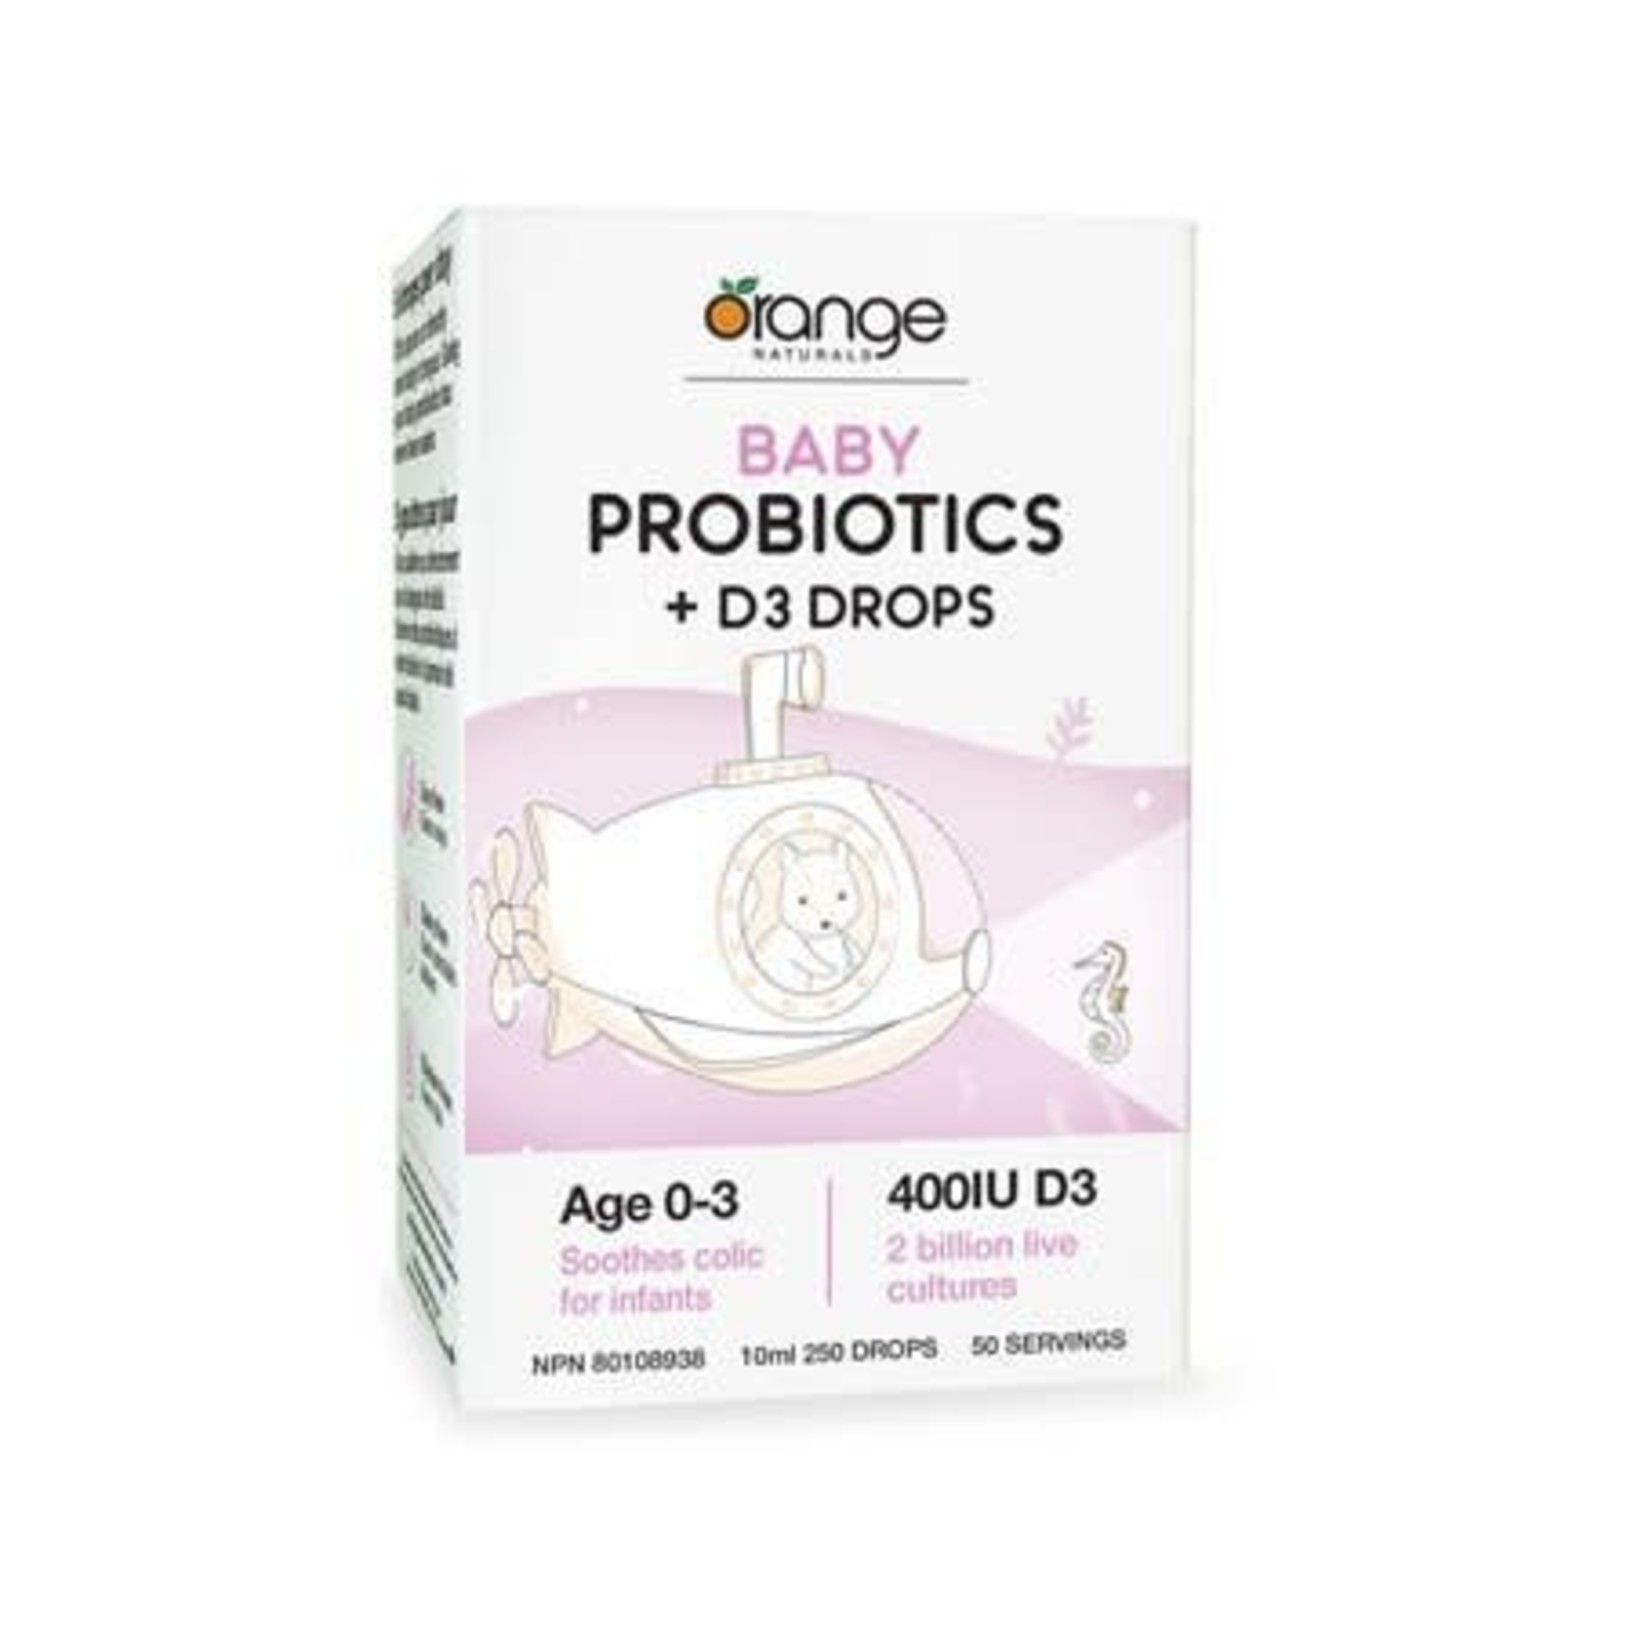 Orange Naturals Orange Naturals Baby Probiotics +D3 Drops  Age 0-3  10 ml